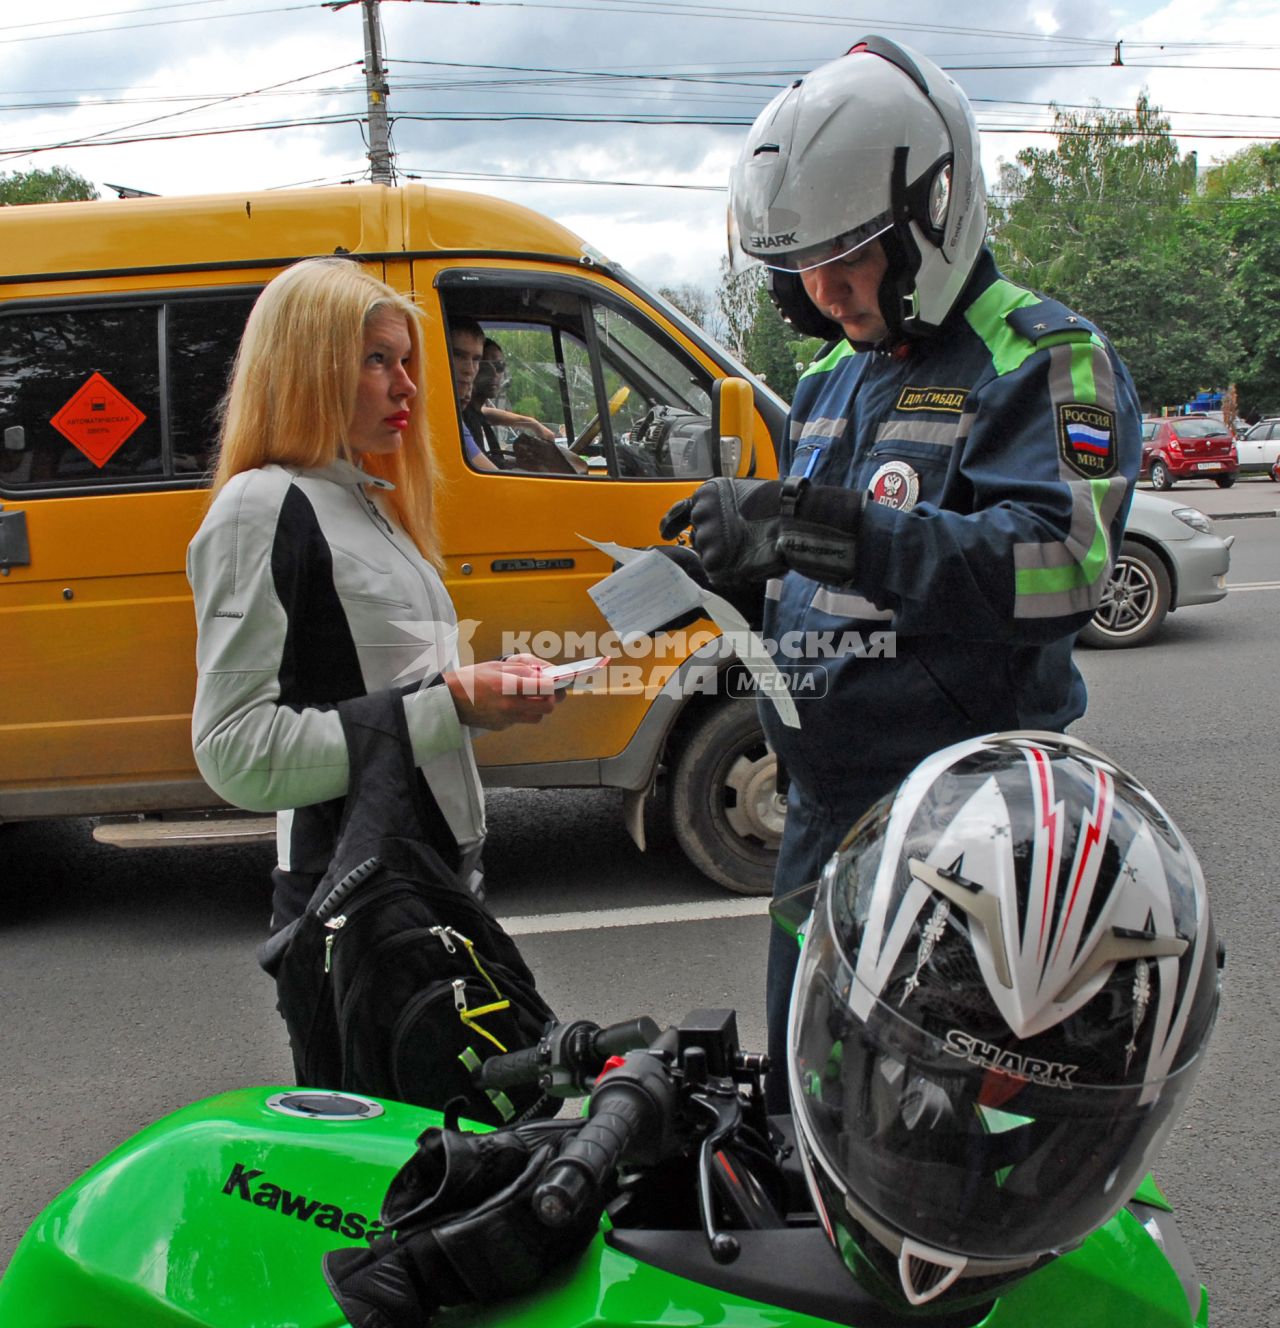 Сотрудник полиции на мотоцикле проверяет у девушки документы.